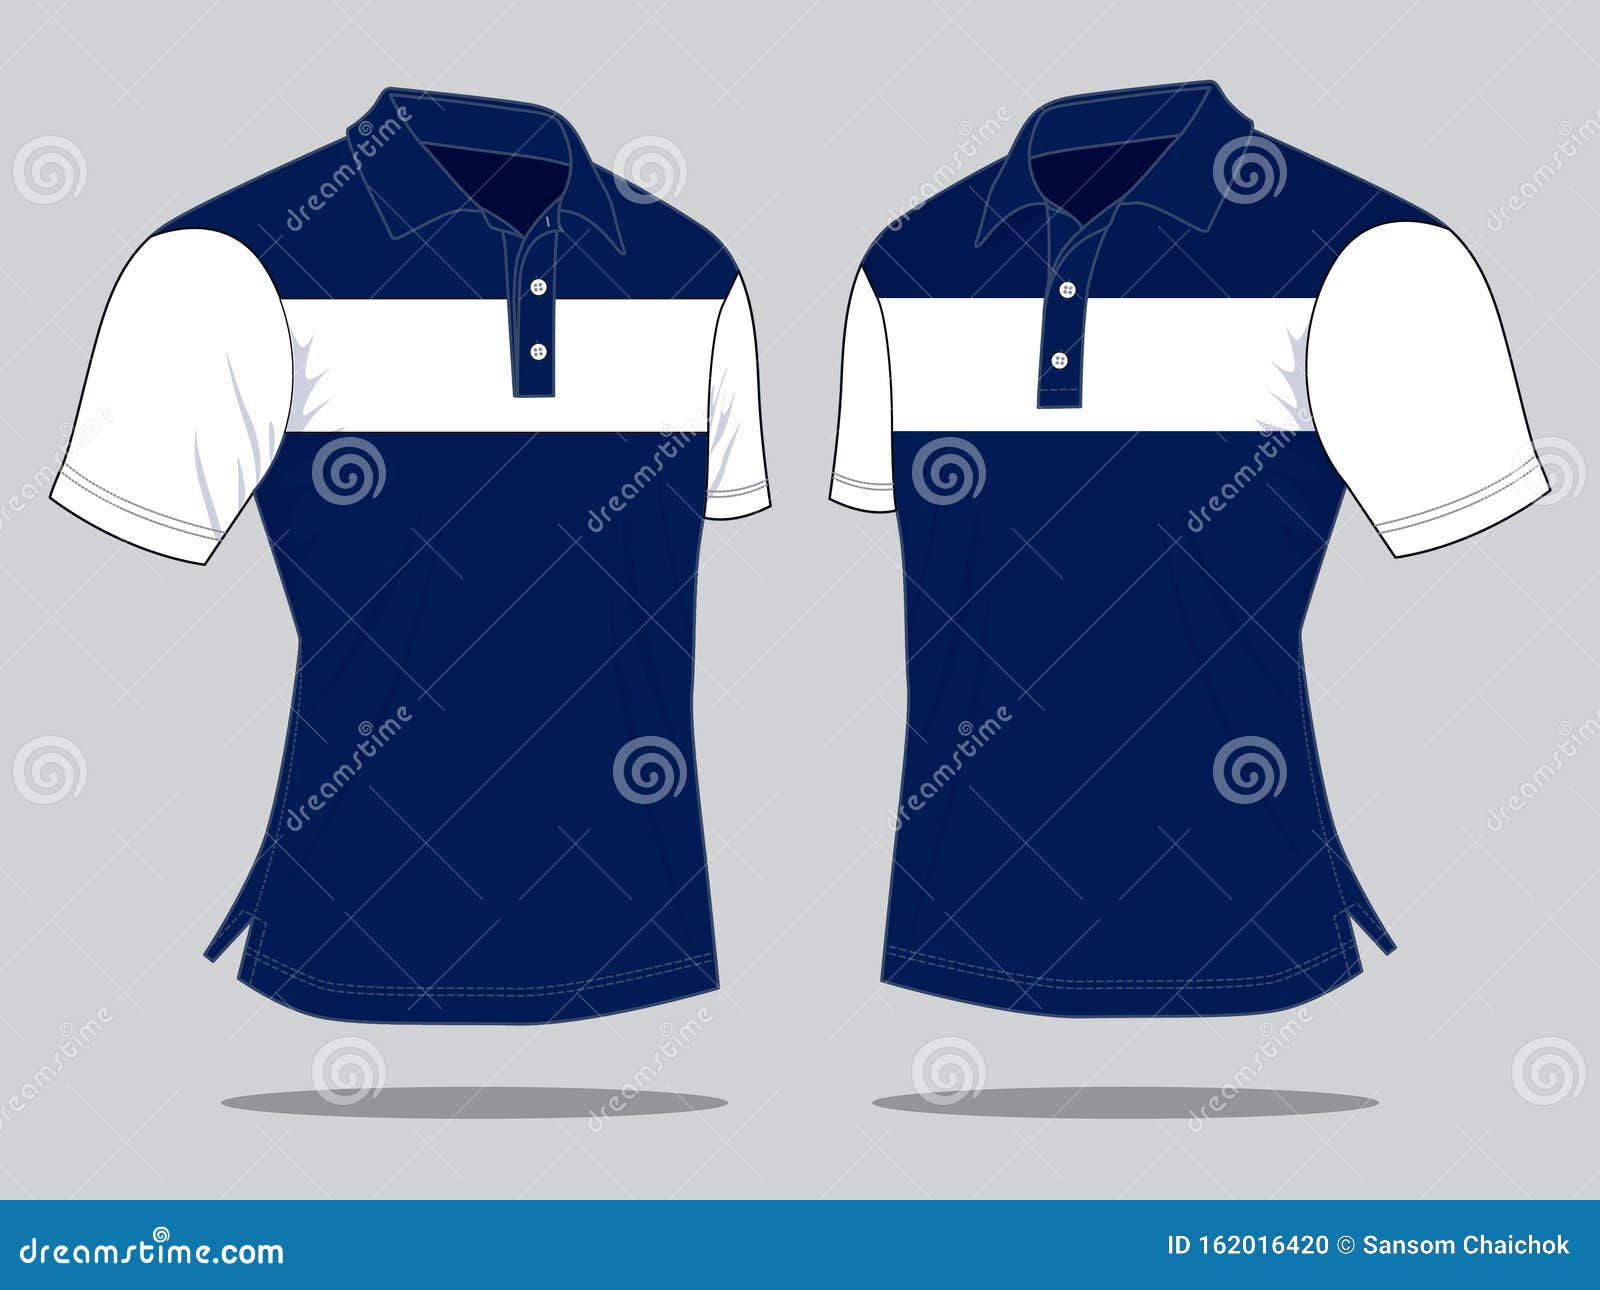 Navy Blue-White Short Sleeve Polo Shirt Design Stock Illustration ...